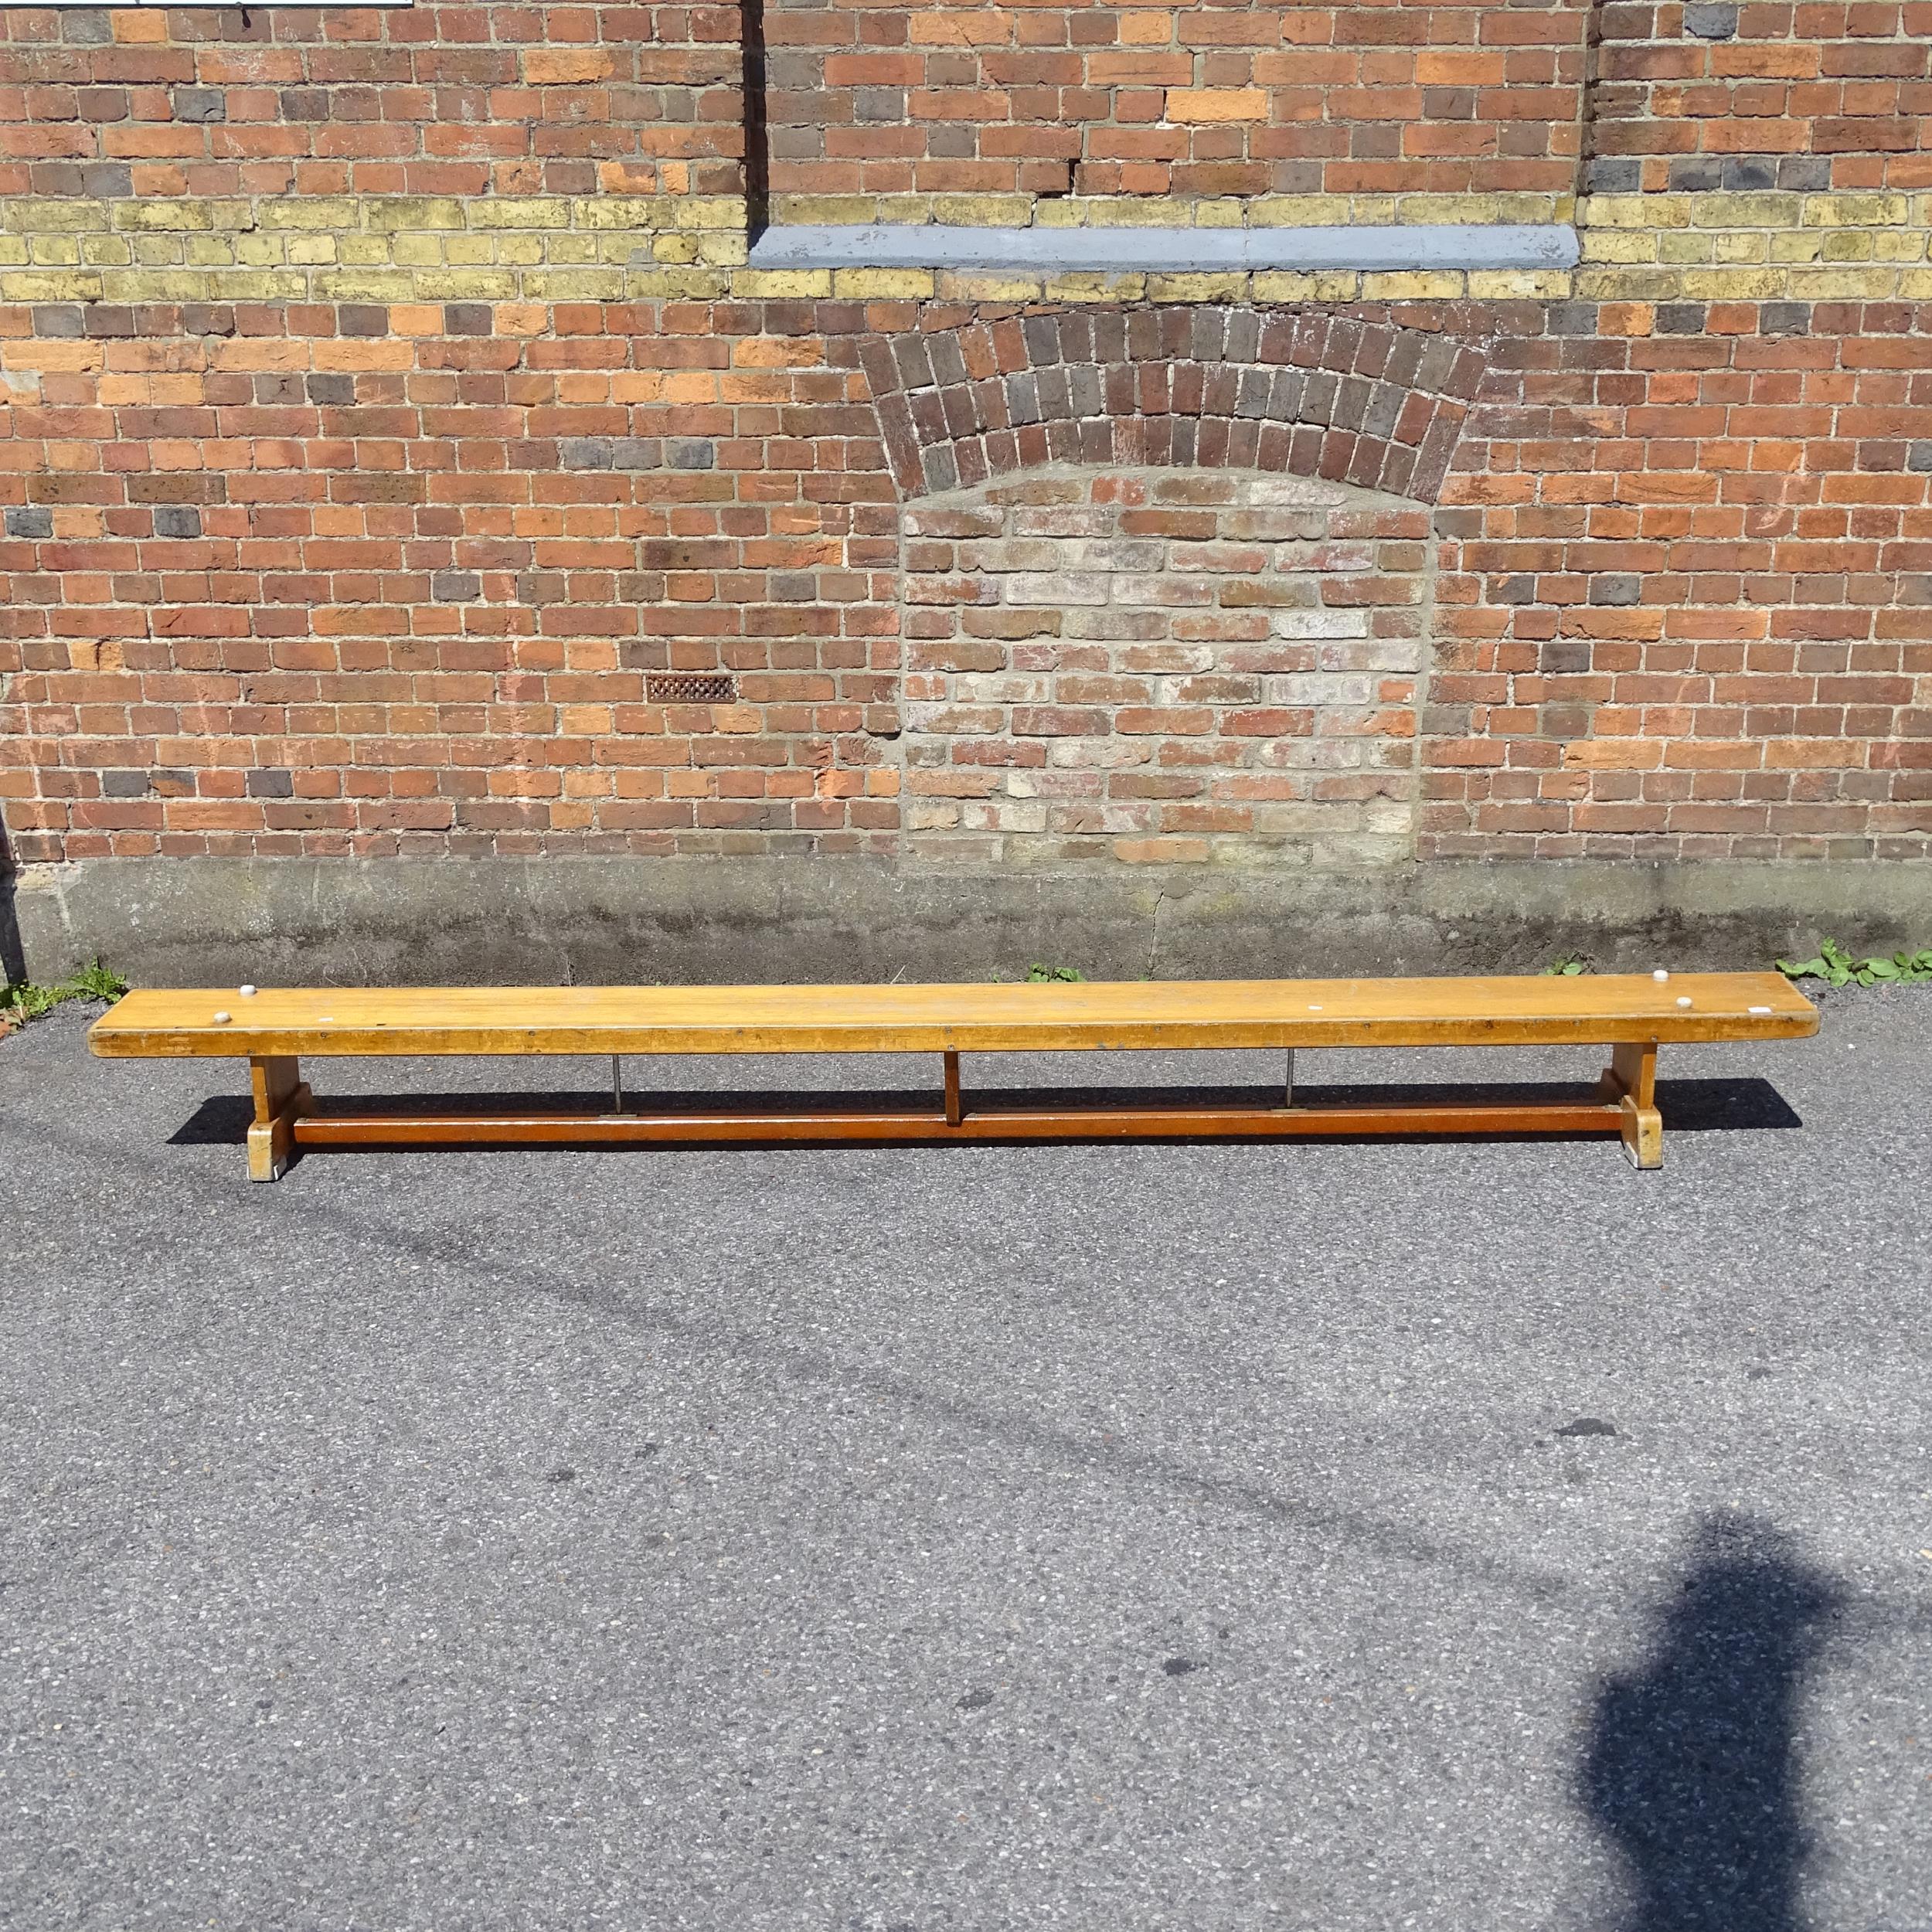 A Vintage school gymnasium bench, L340cm